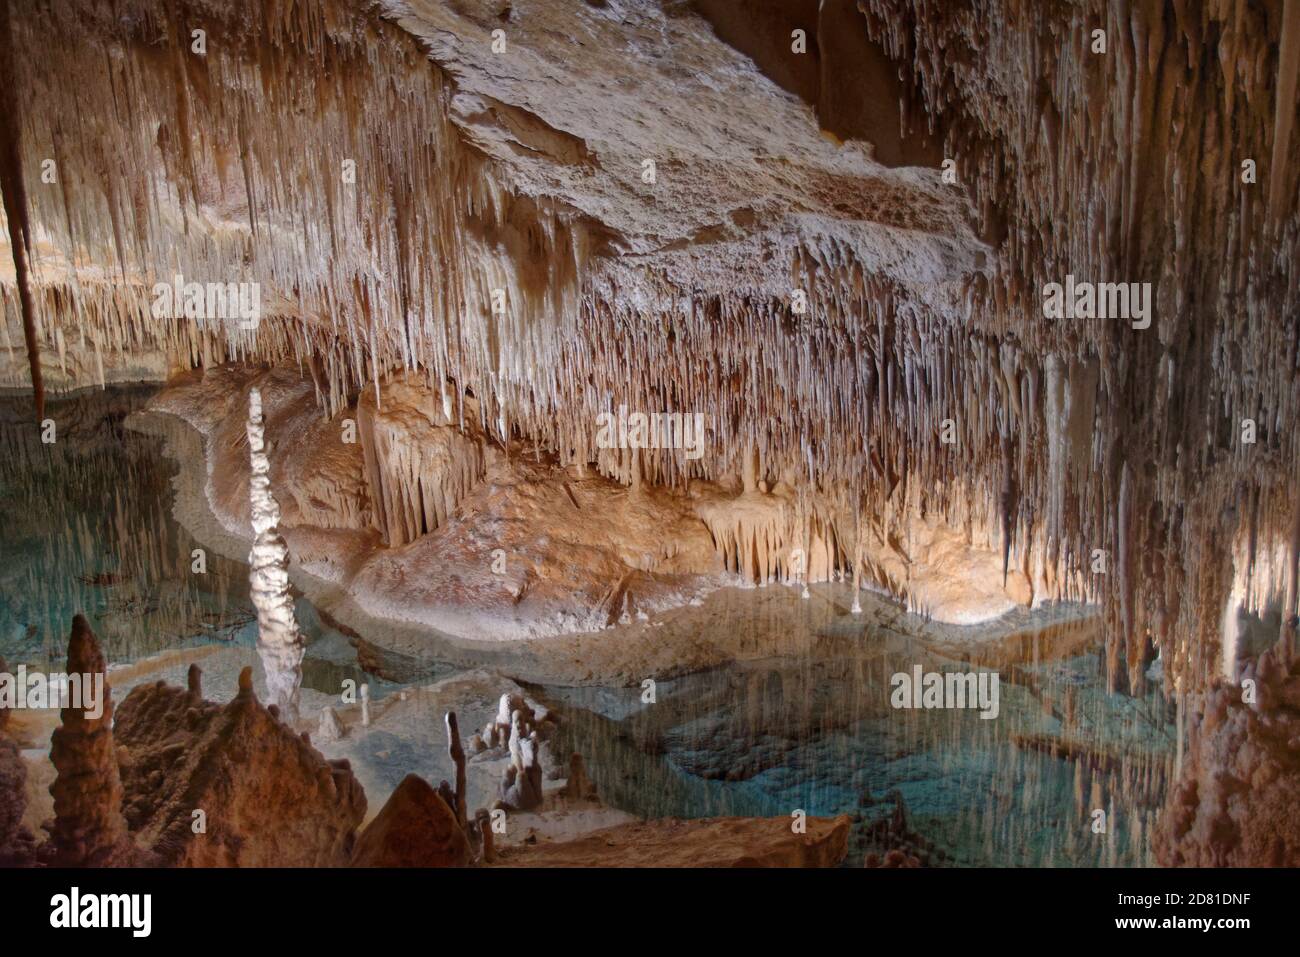 Intérieur d'une grotte de calcaire inondée avec de nombreuses stalactites et stalagmites et réflexions dans la surface de l'eau, grottes de Drach / Cuevas del Drach, Majorque. Banque D'Images